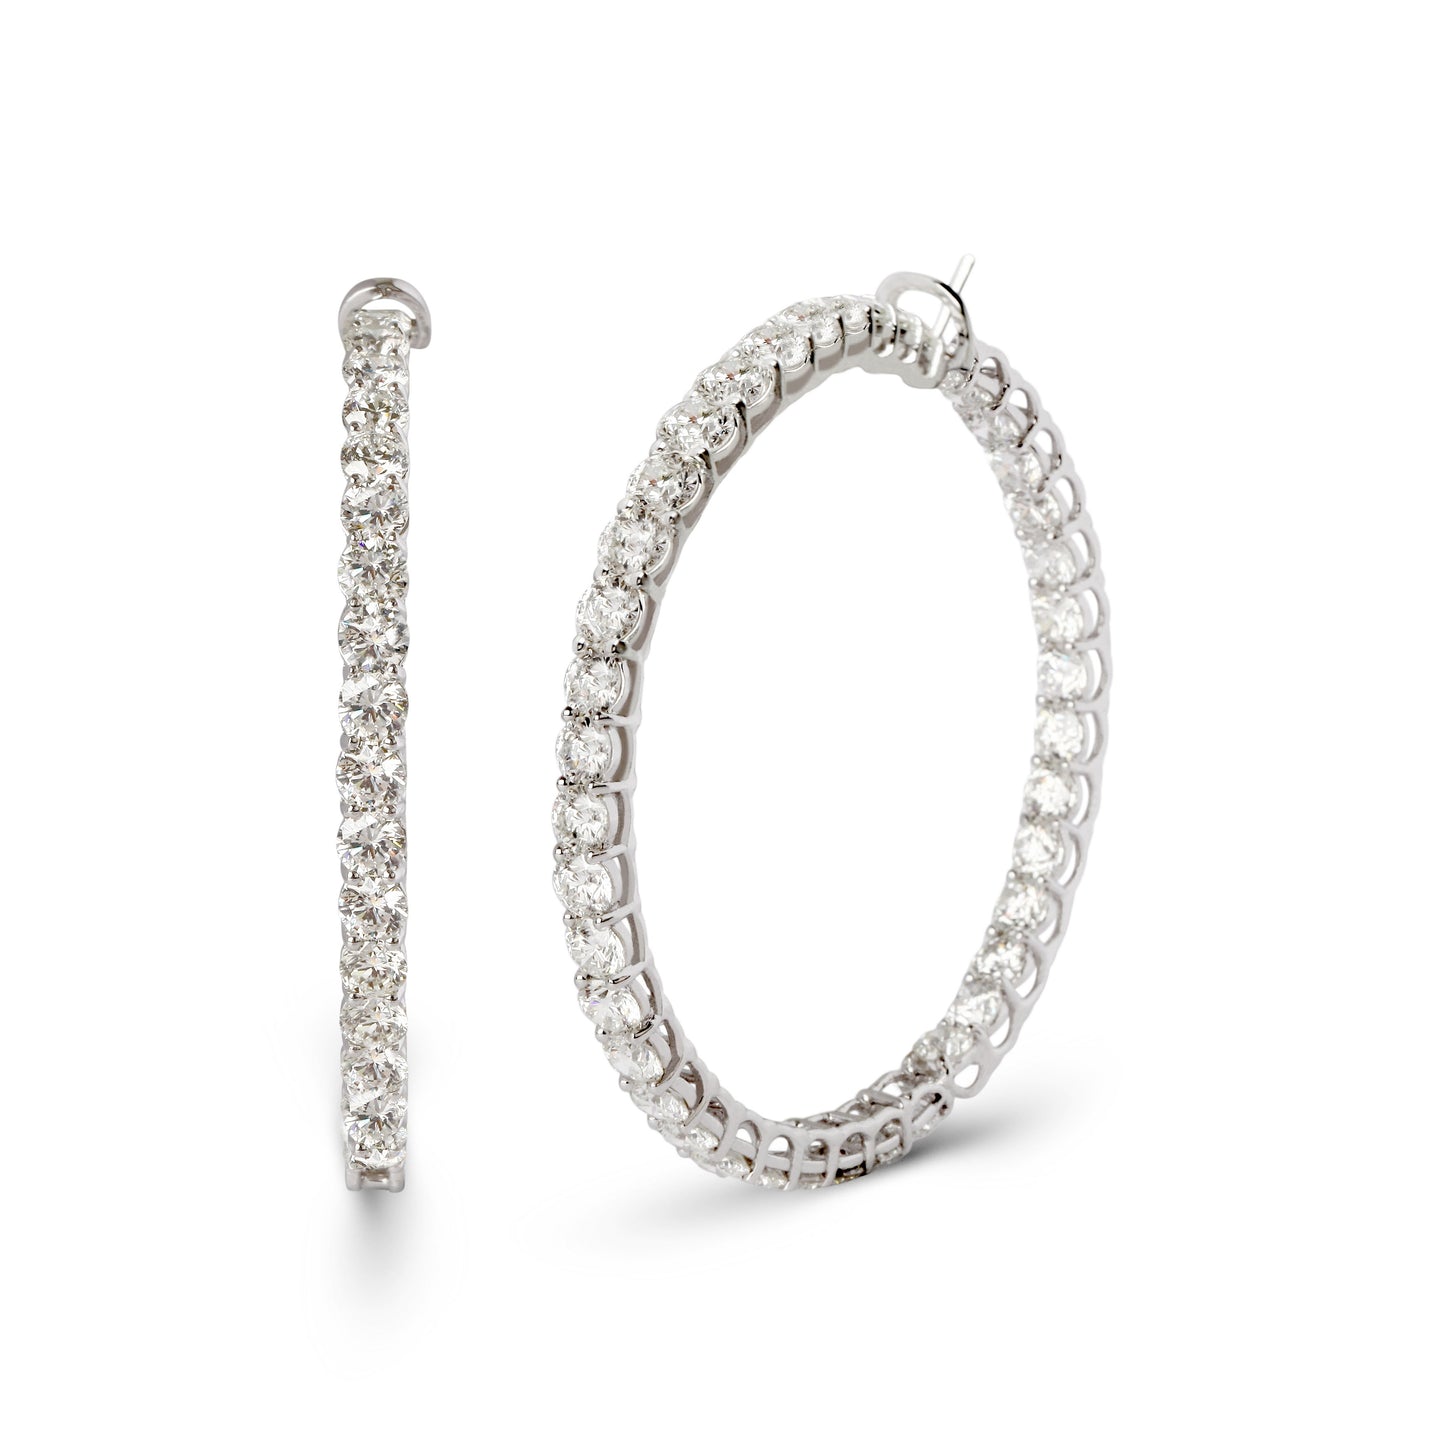 Inside-Out Diamond Big Hoop Earrings | jewelry store